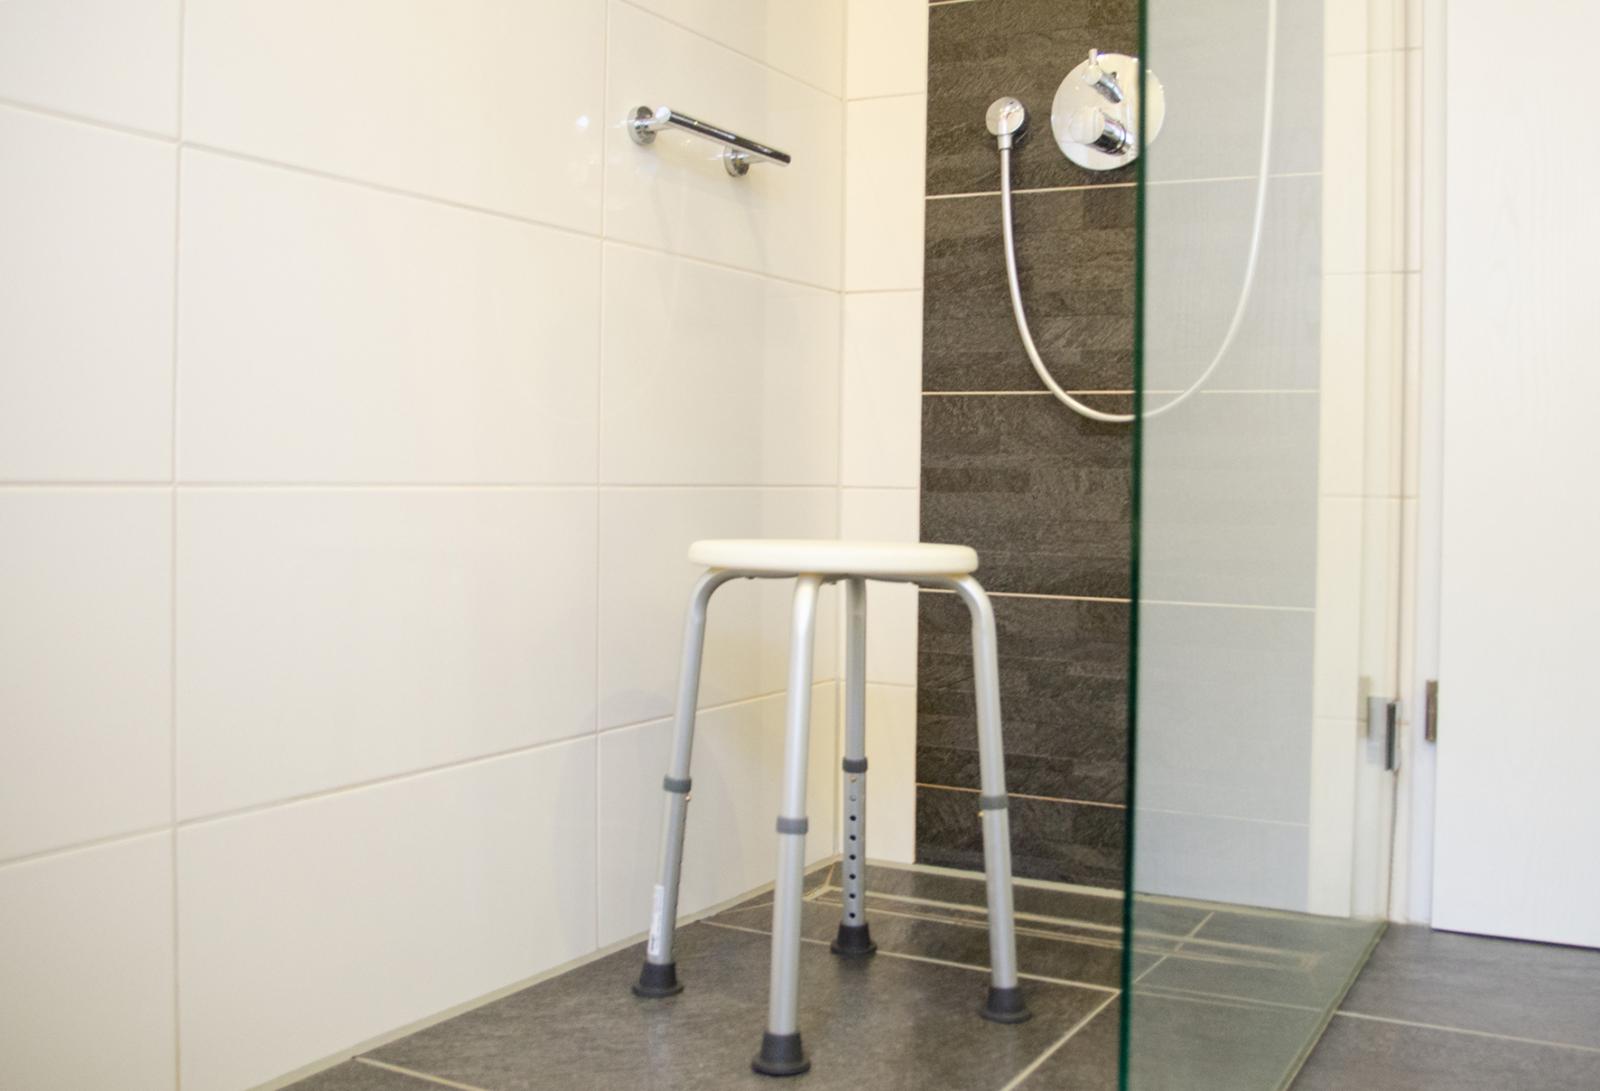 Eine ebenerdige Dusche, Griffe oder ein Badhocker: Es gibt große und kleine Tricks, seine Wohnung sturzsicherer zu gestalten. Darum geht es bei der Wohnberatung in Metelen am 12. März. (Foto: FH Münster/Theresa Gerks)